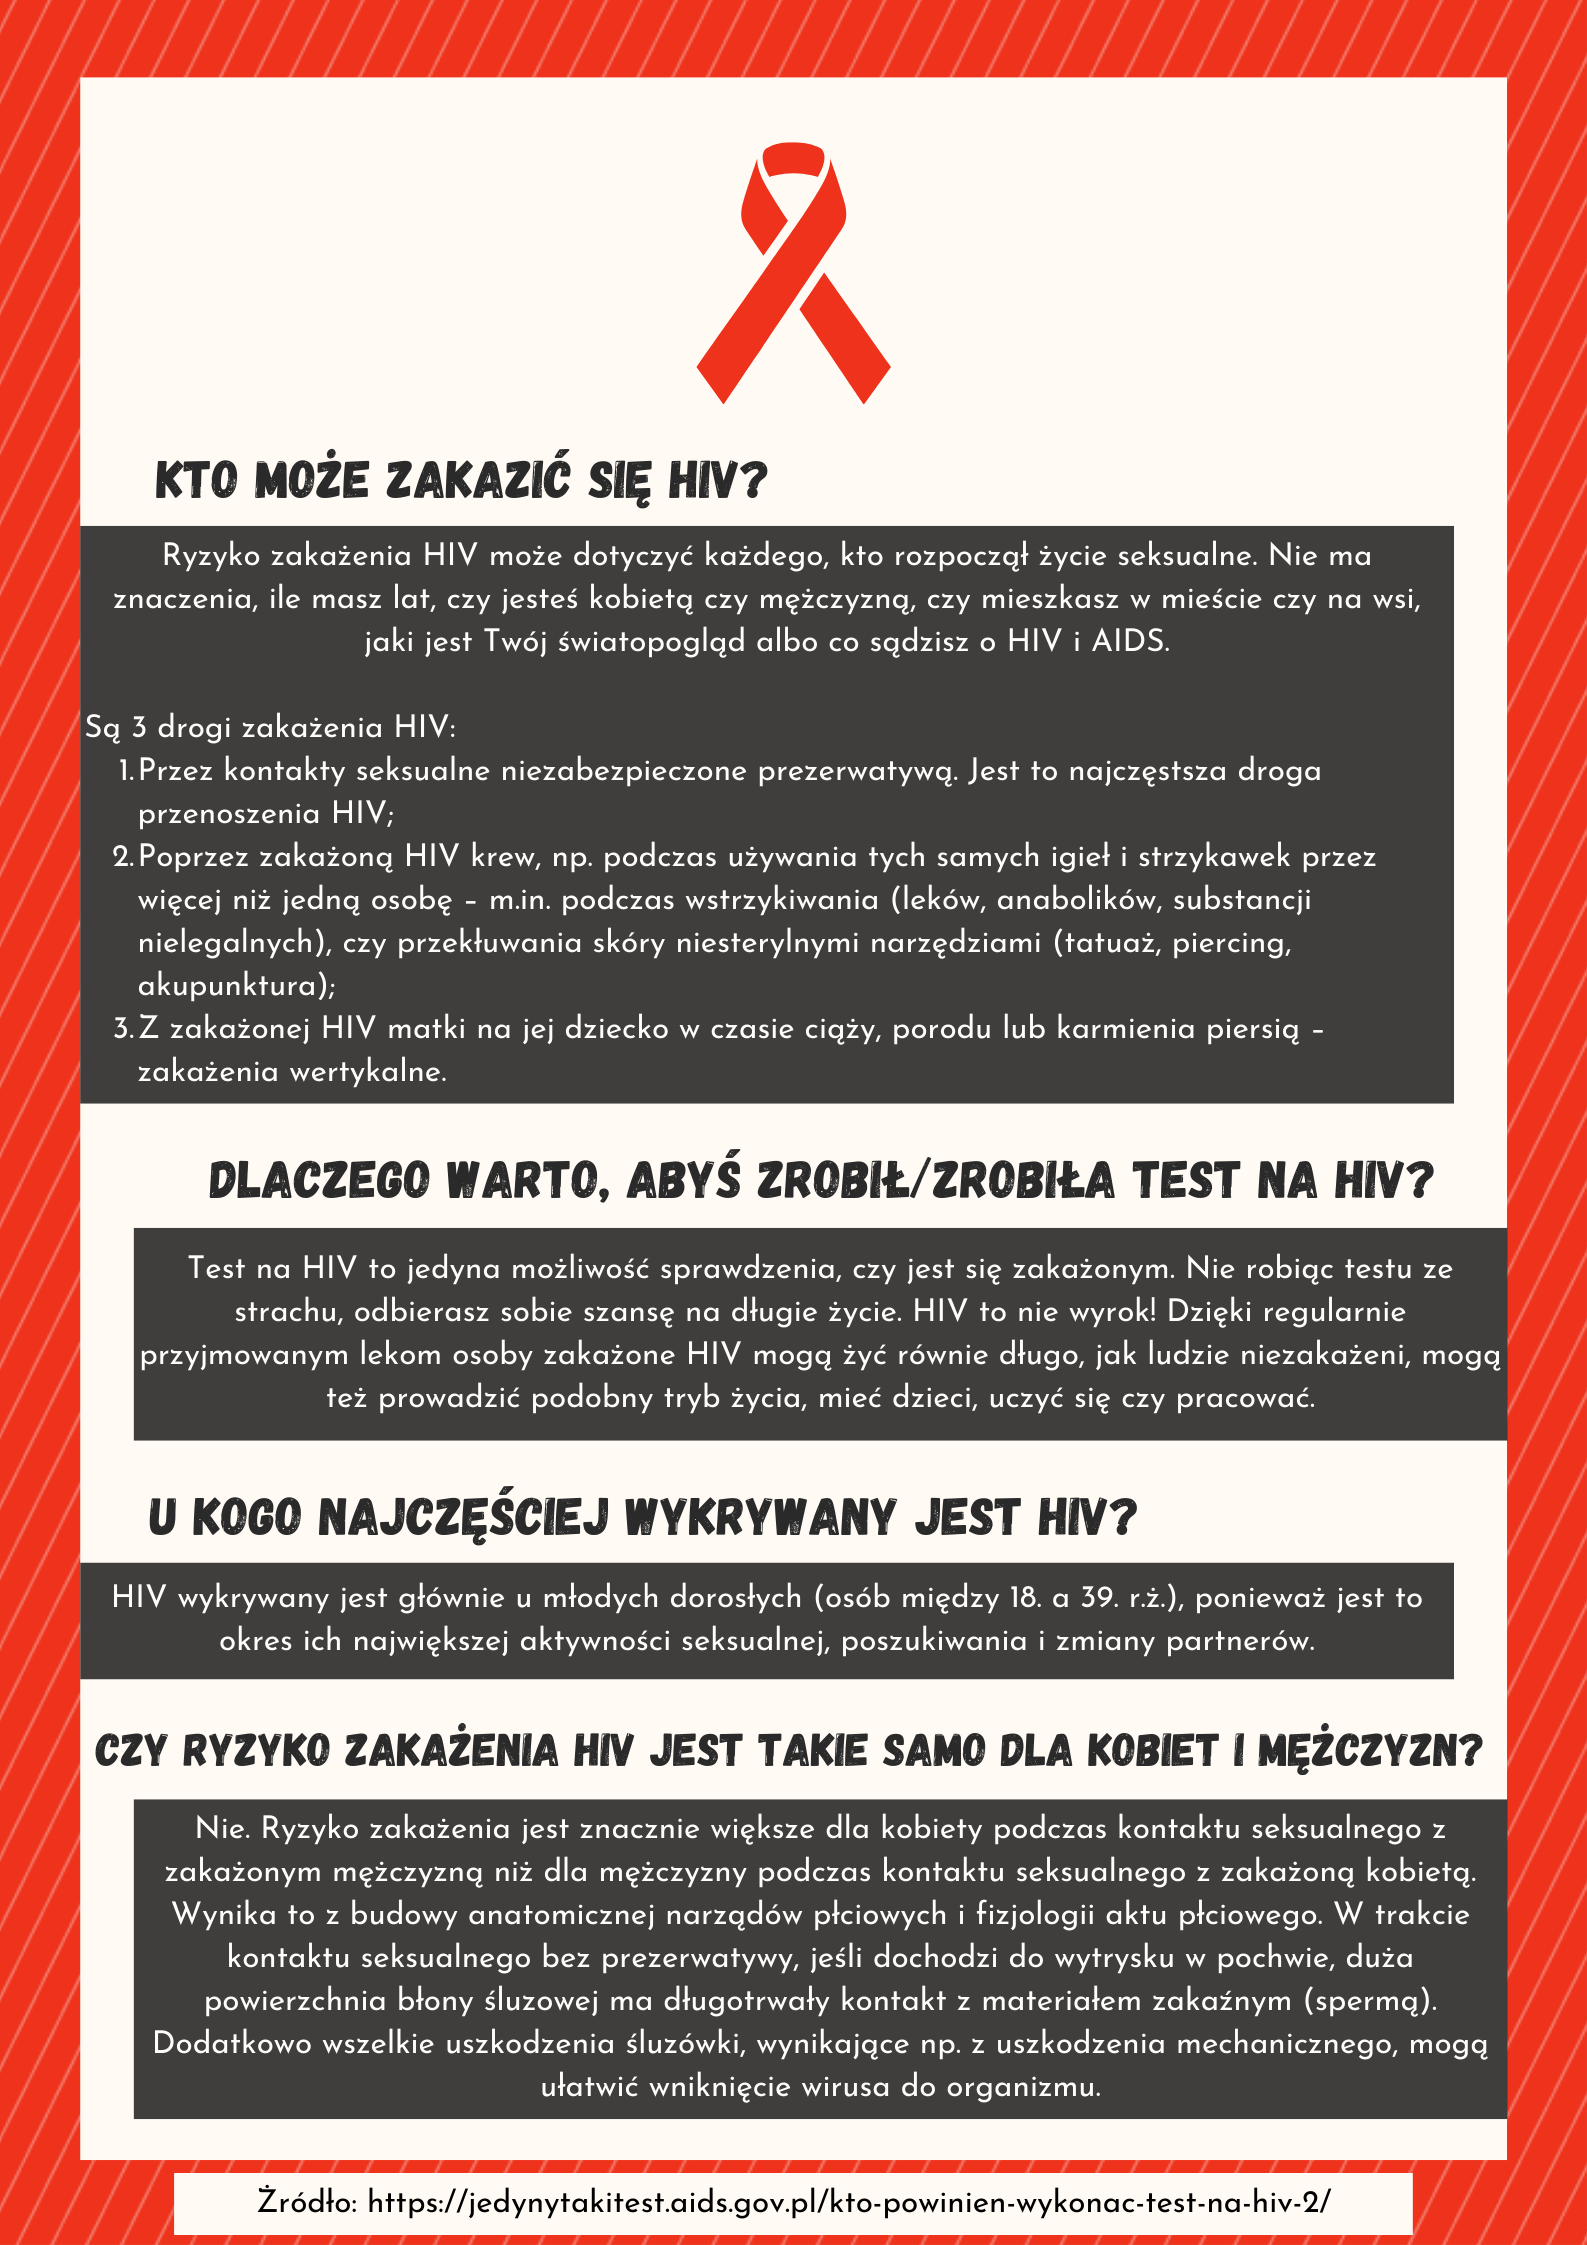 HIV/AIDS awareness - 5